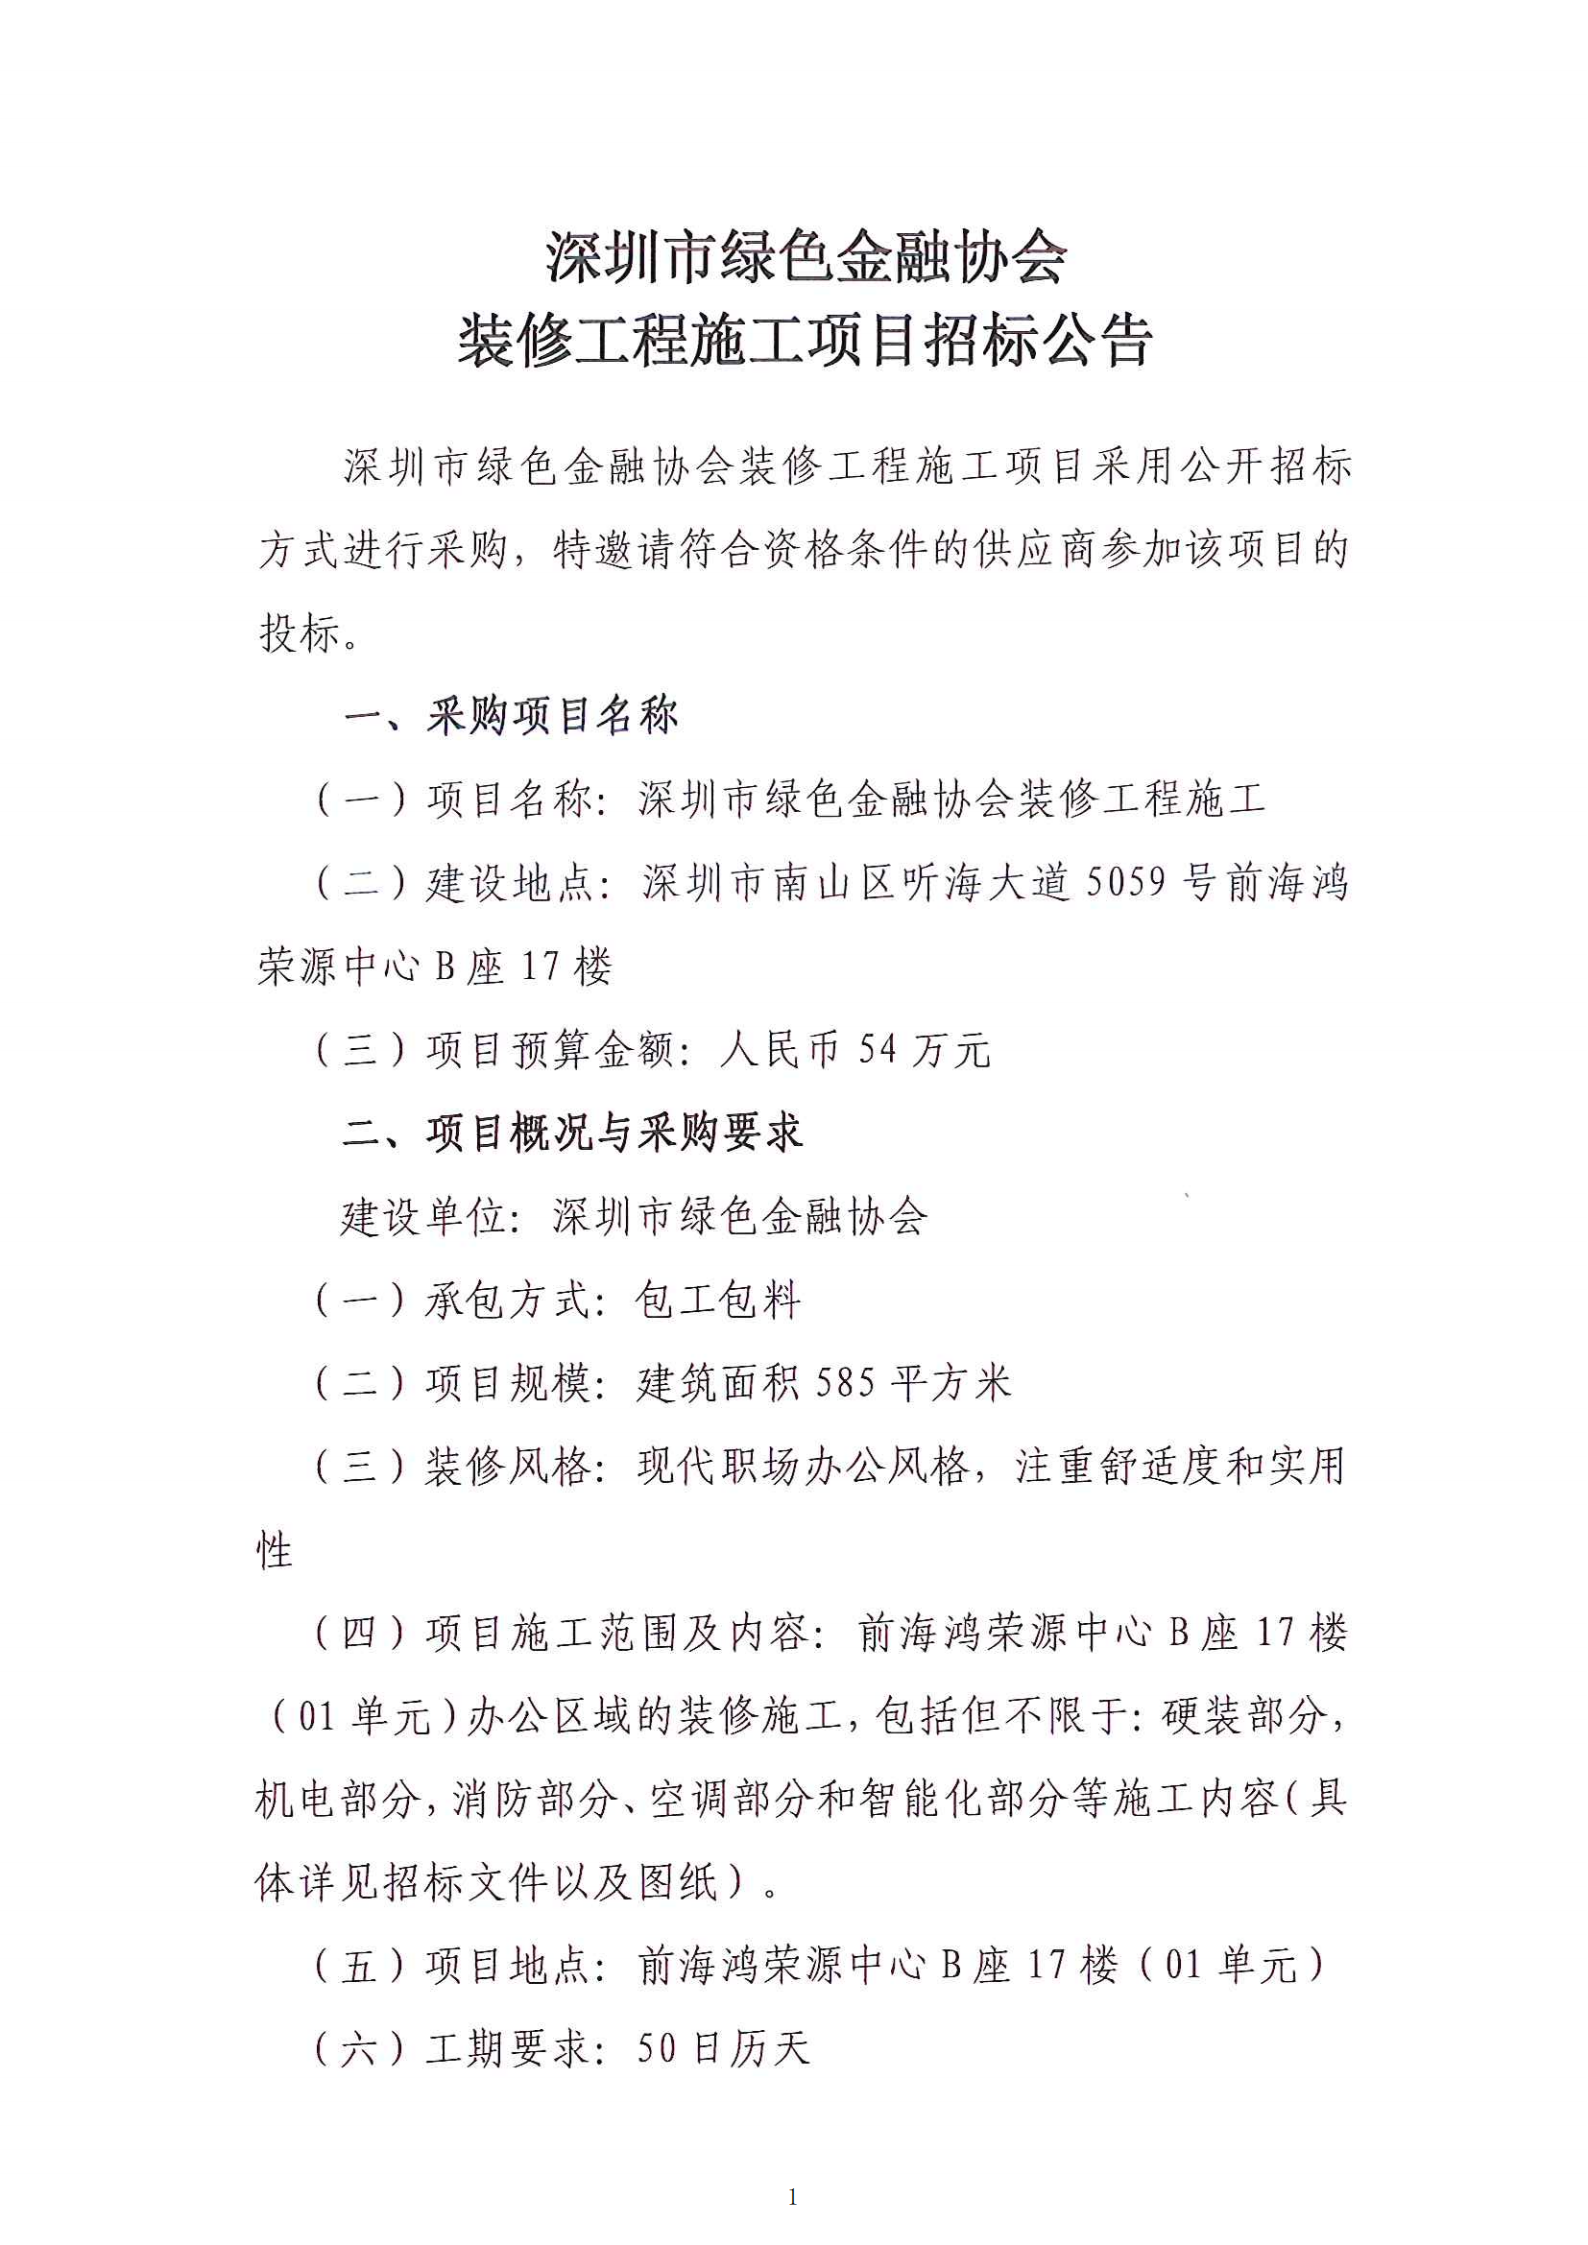 【公示公告】深圳市绿色金融协会 装修工程施工项目招标公告